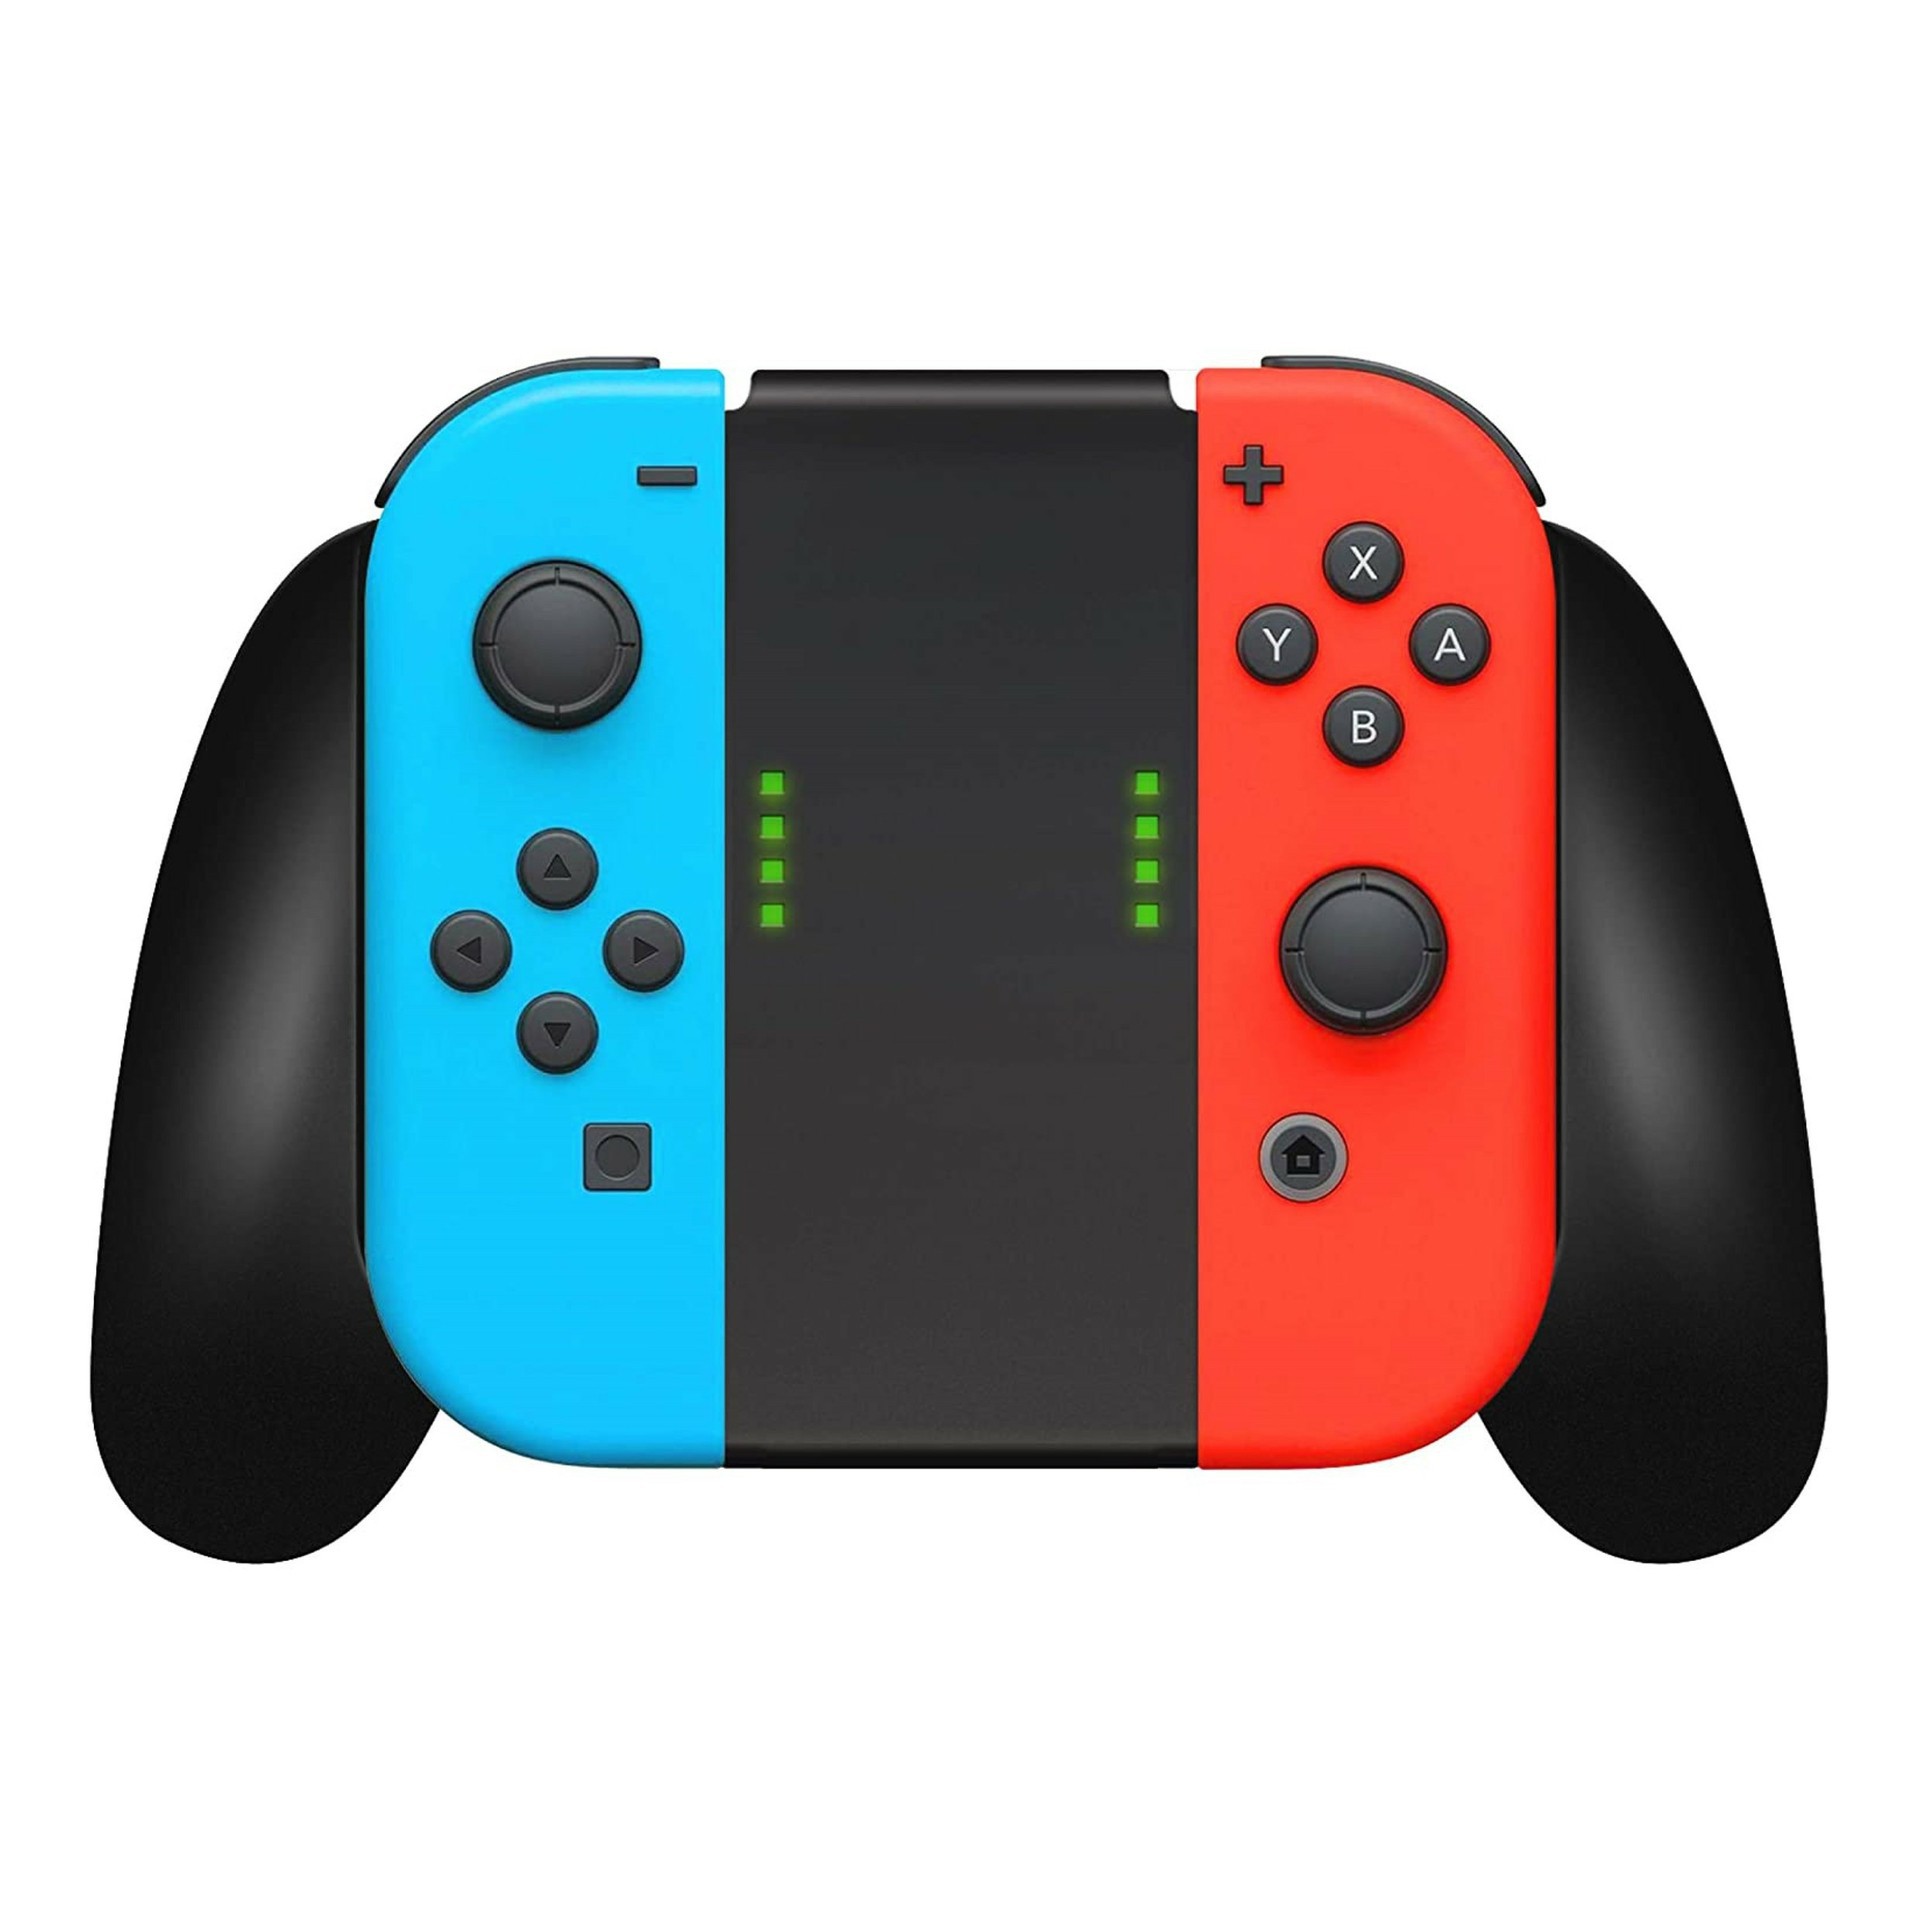 Nieuwe Wireless Joy-Con Controllers + Handgrip voor de Nintendo Switch - Rood/Blauw Kopen | Nintendo Switch Hardware